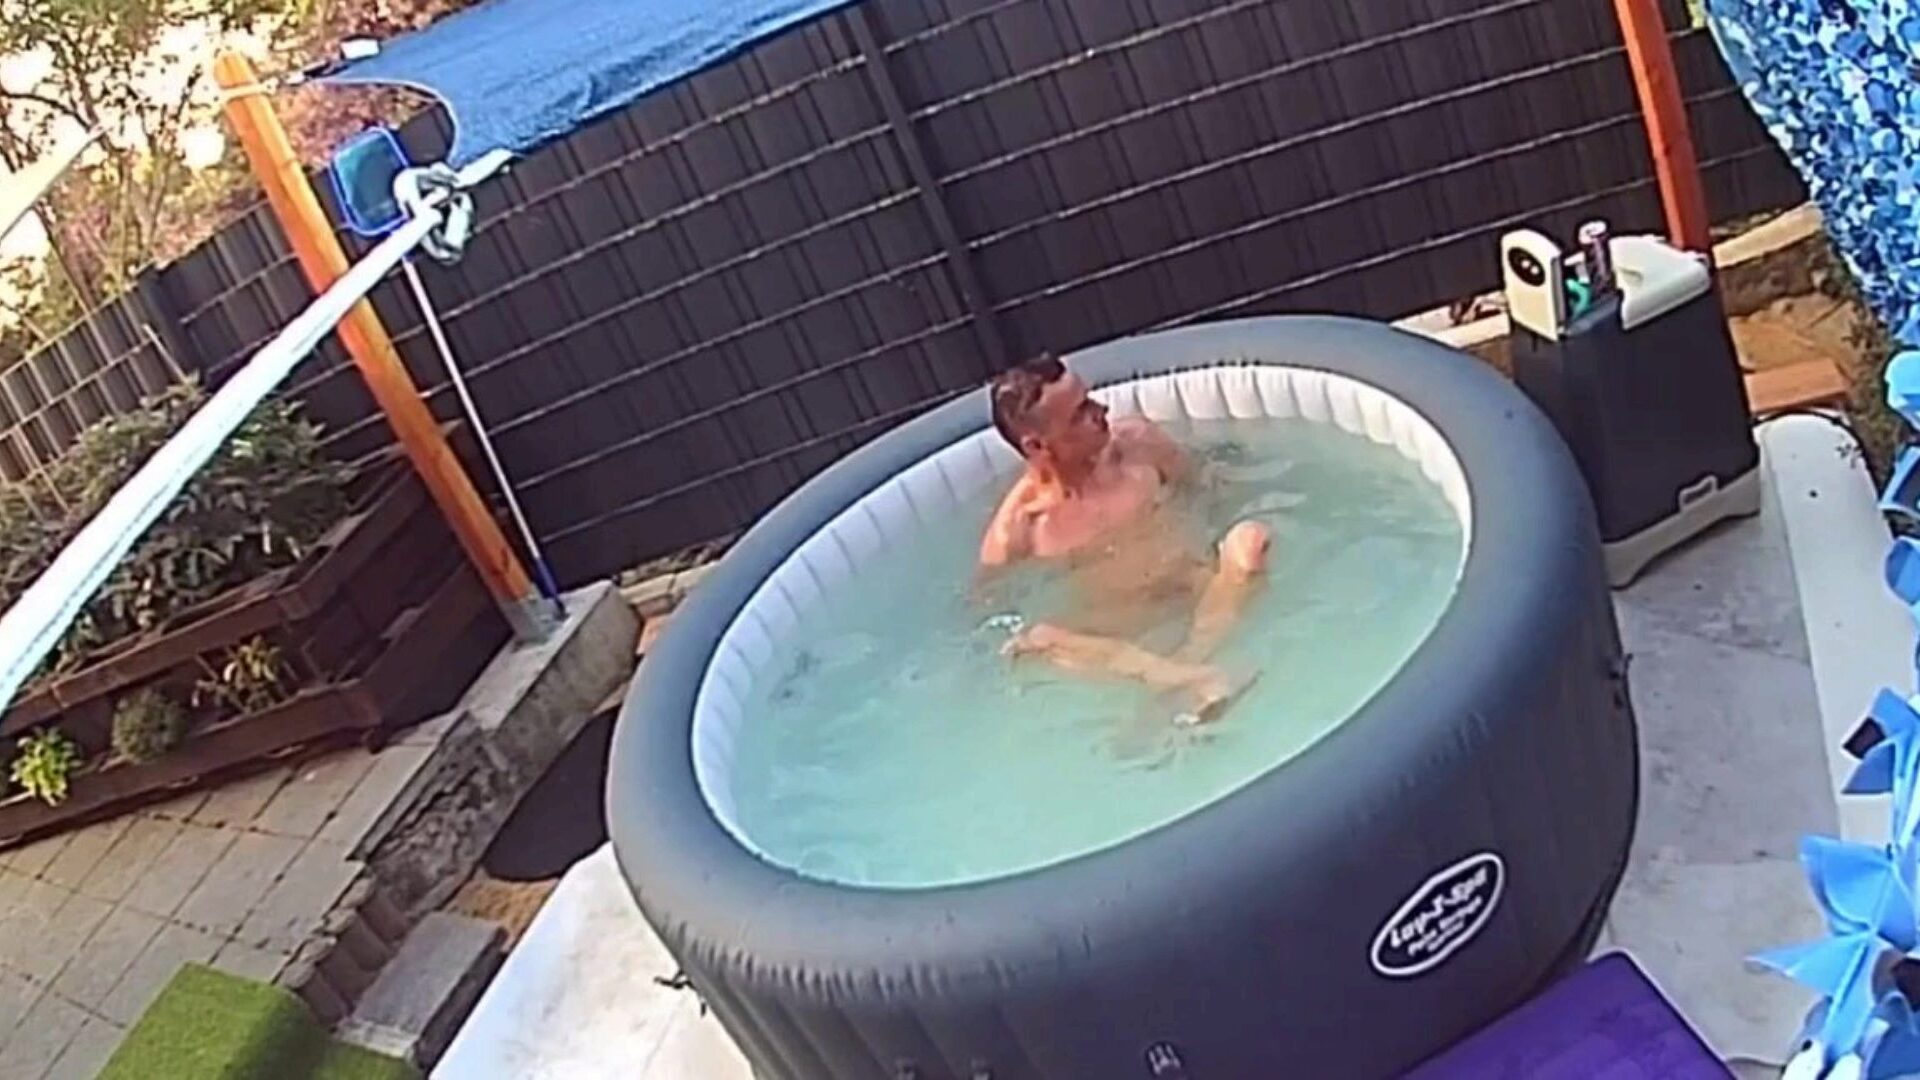 verstecká kamera: nachbarn im pool ausspioniert